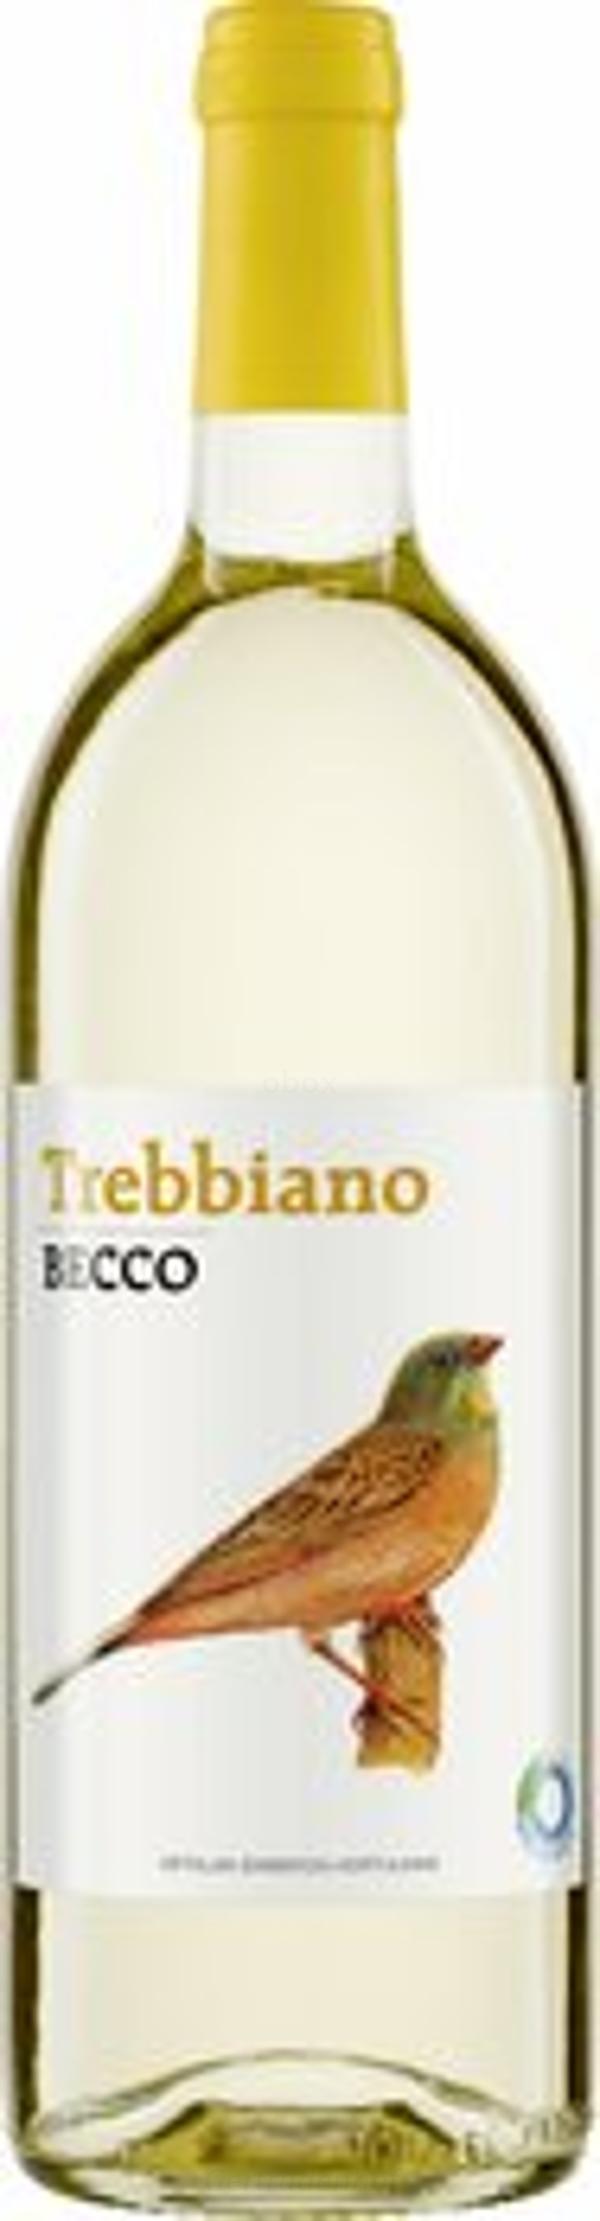 Produktfoto zu Becco Trebbiano weiß 1 L